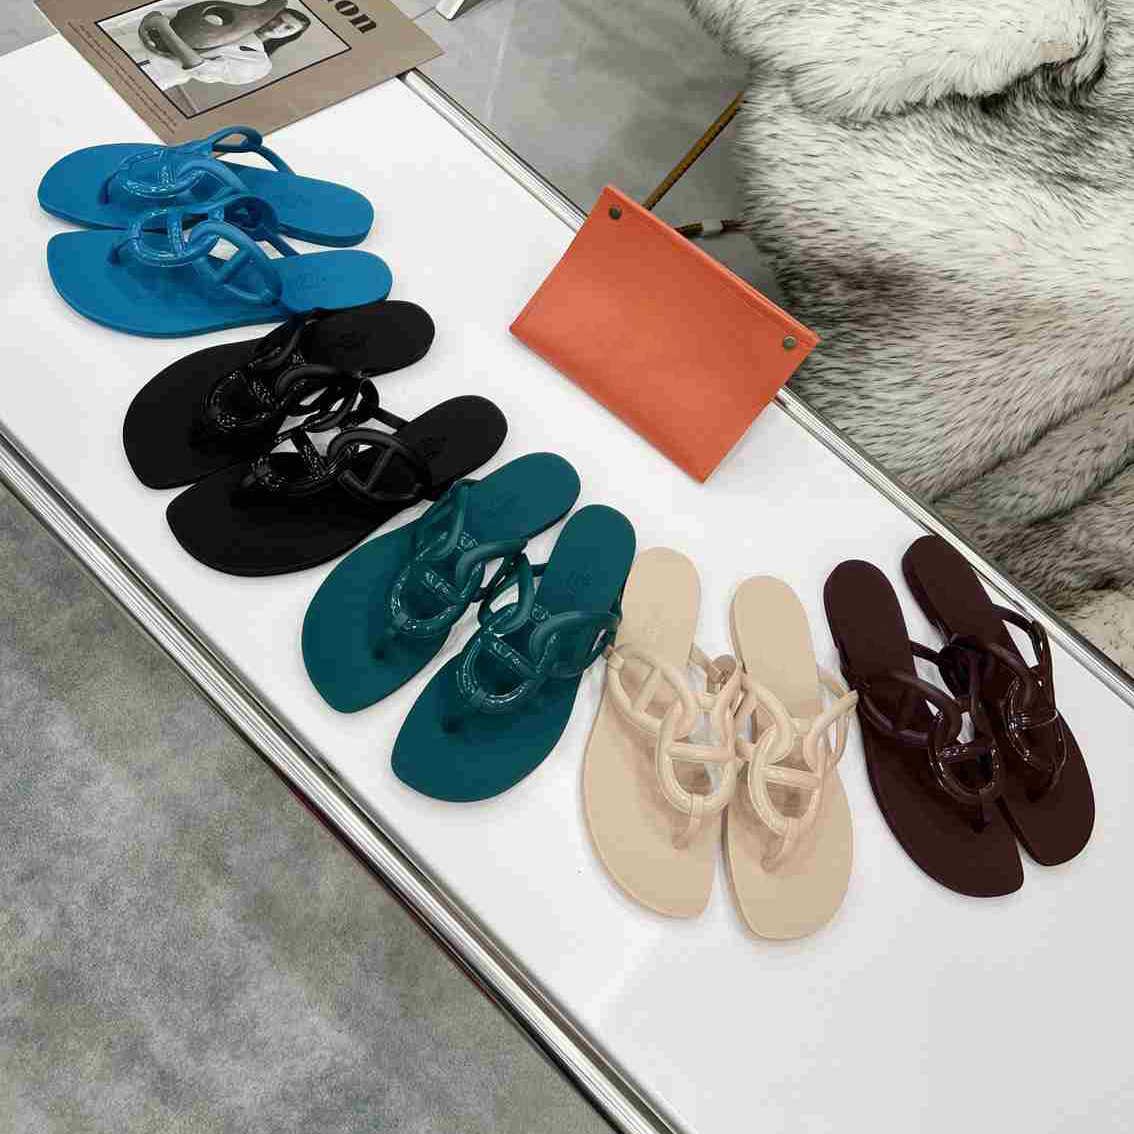 

Egerie Sandal Flat Sandals Flip Flop Woman Slipper Designer Slides Chain Rubber Black Blue Beach Oran Sandal Fashion Outdoor Flip Flop versatile Size35-41